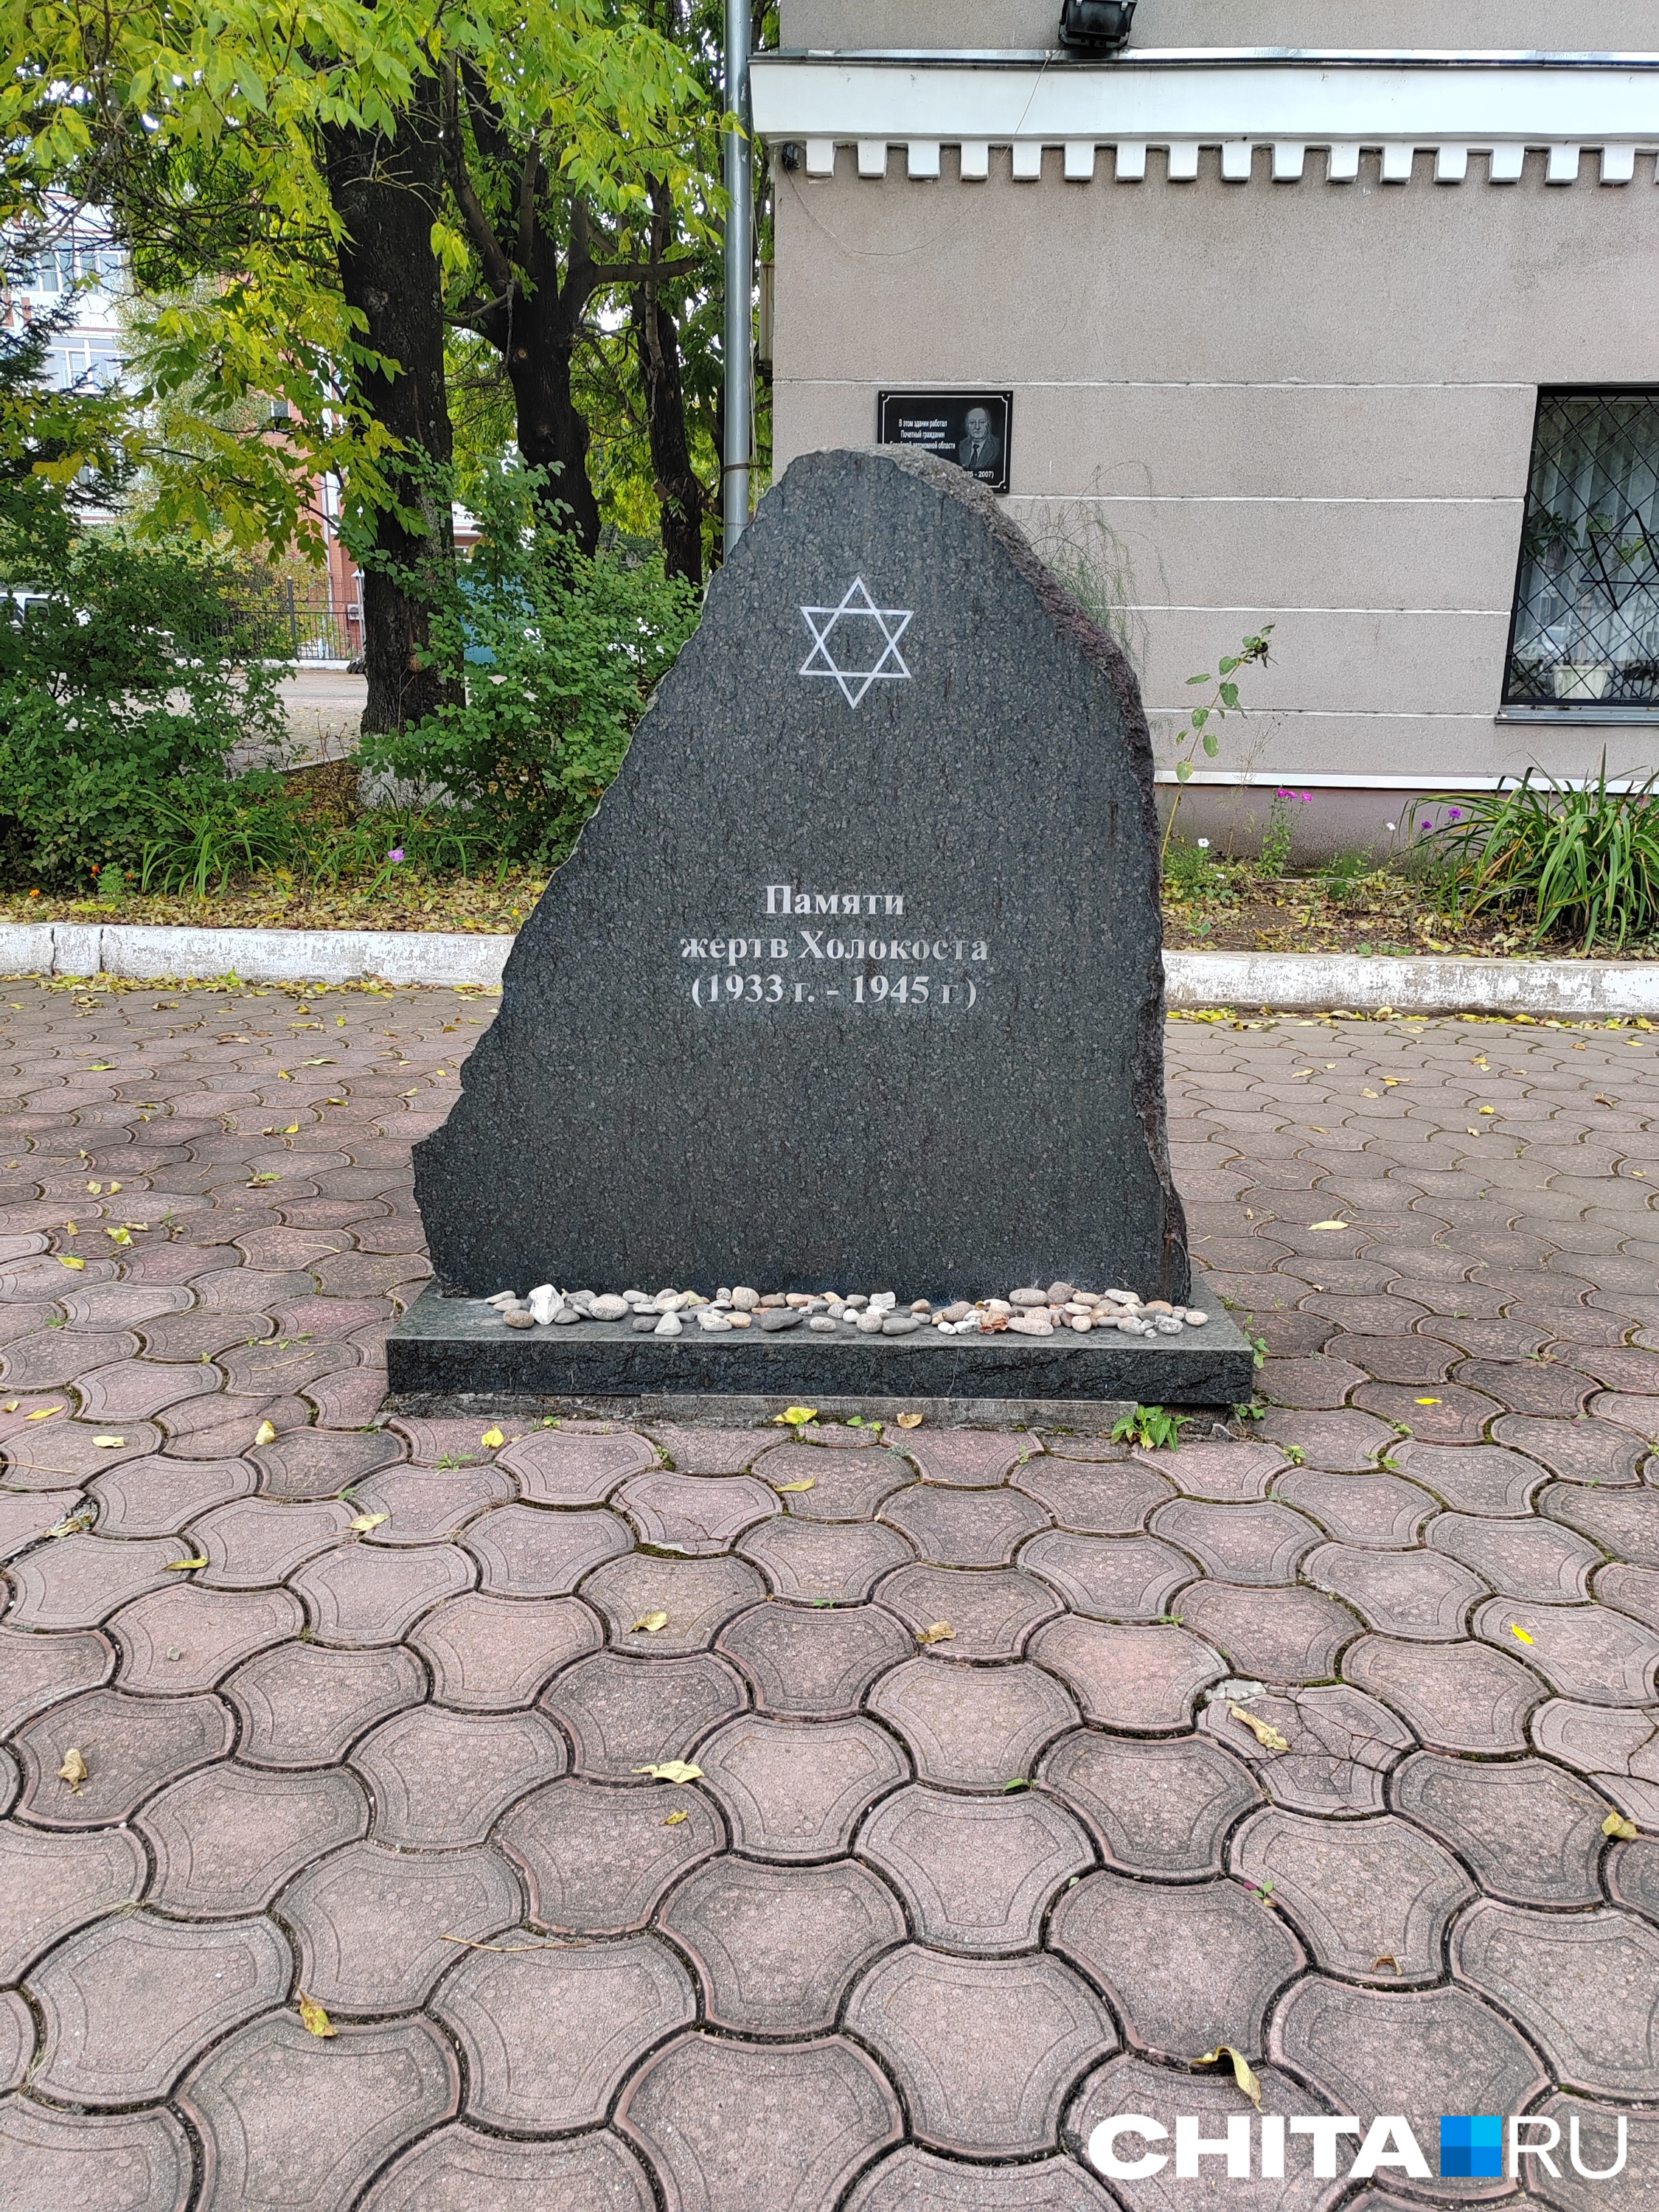 Мемориальный камень перед общиной «Фрейд»